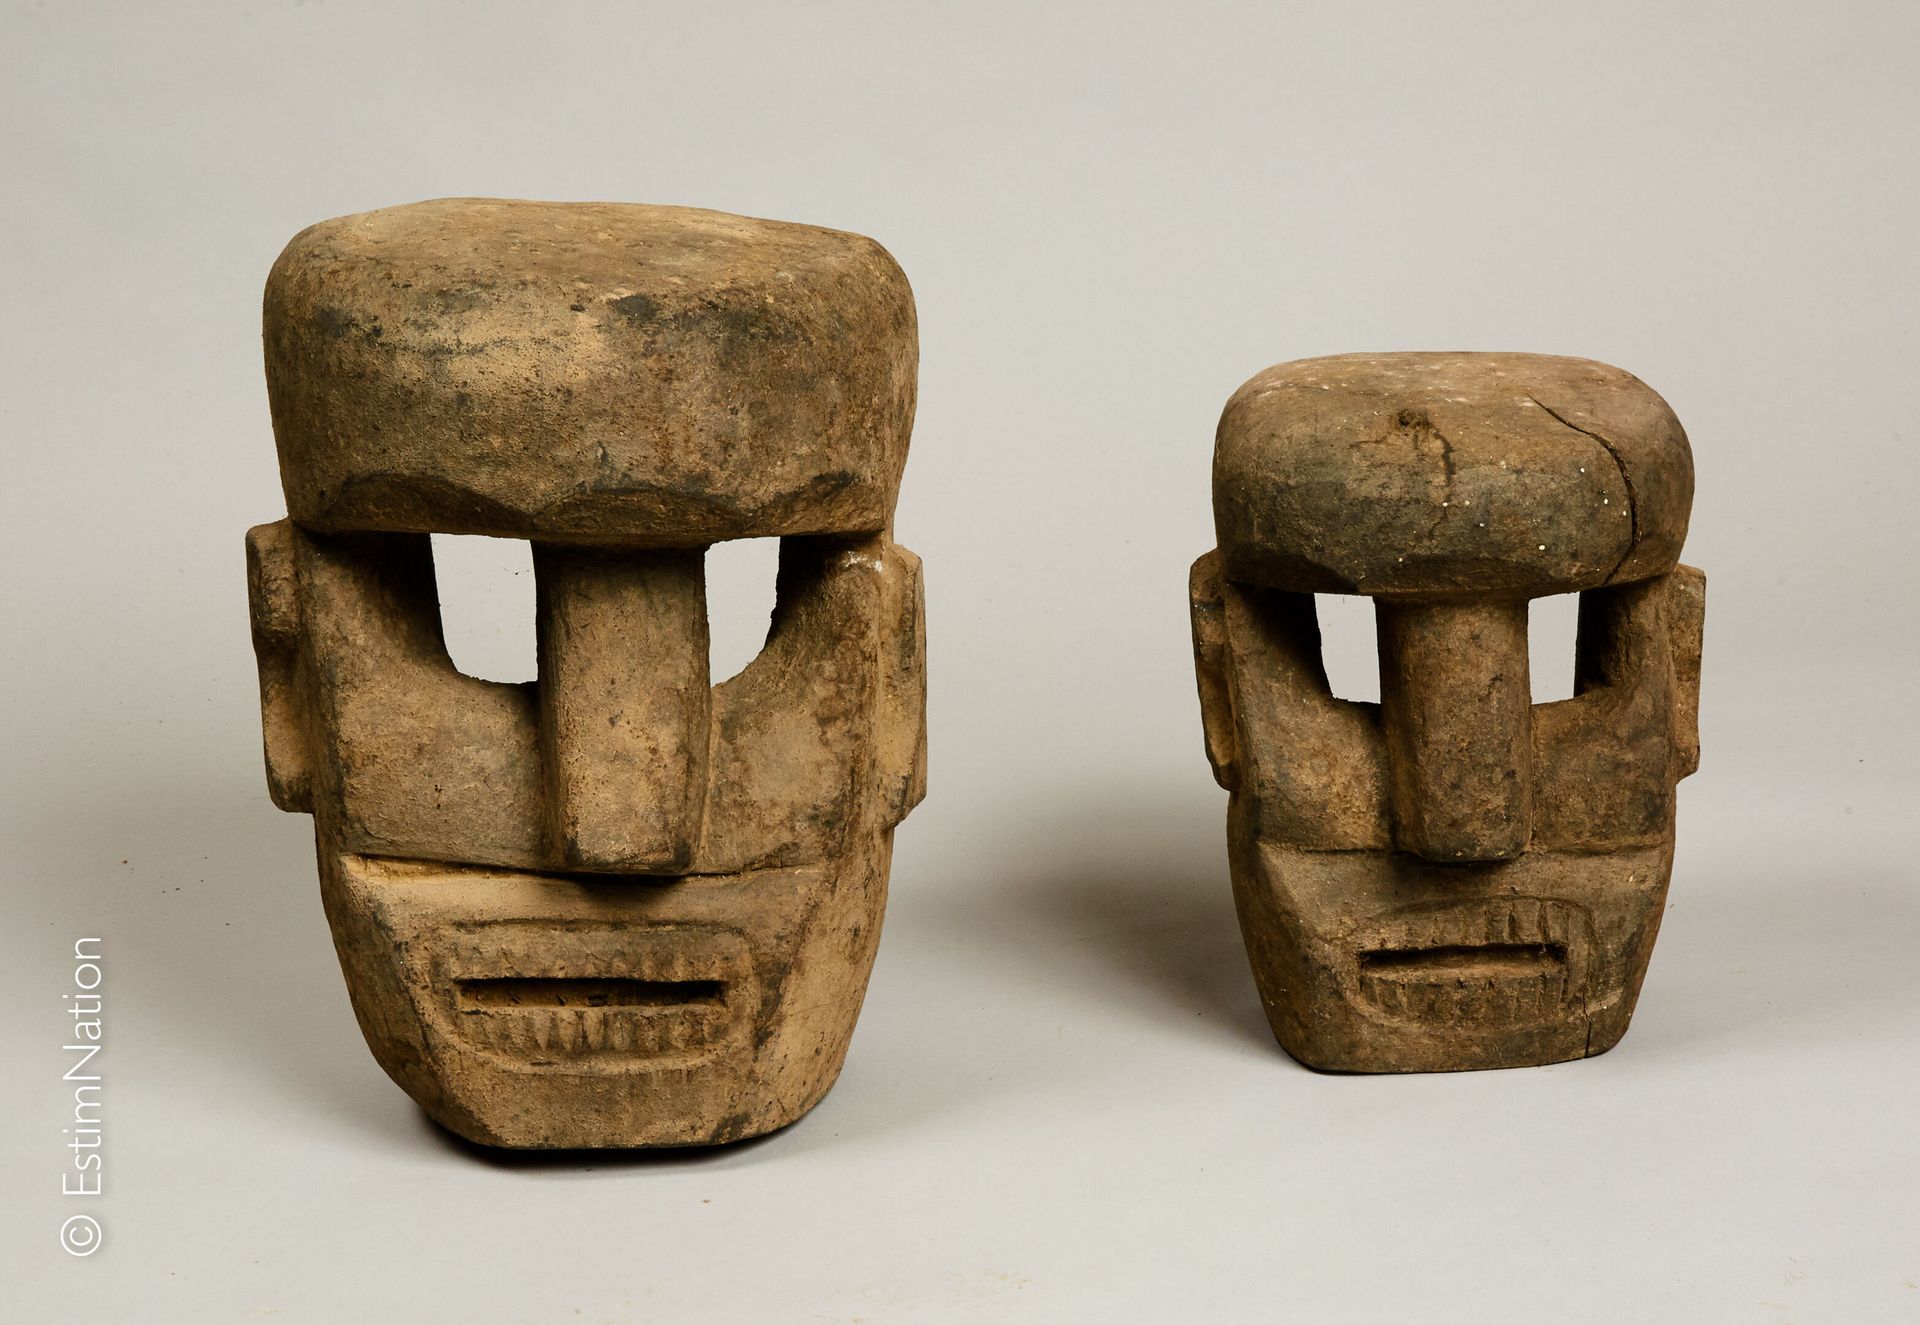 TIMOR TIMOR



Zwei Masken aus geschnitztem Holz und natürlichen Pigmenten, die &hellip;